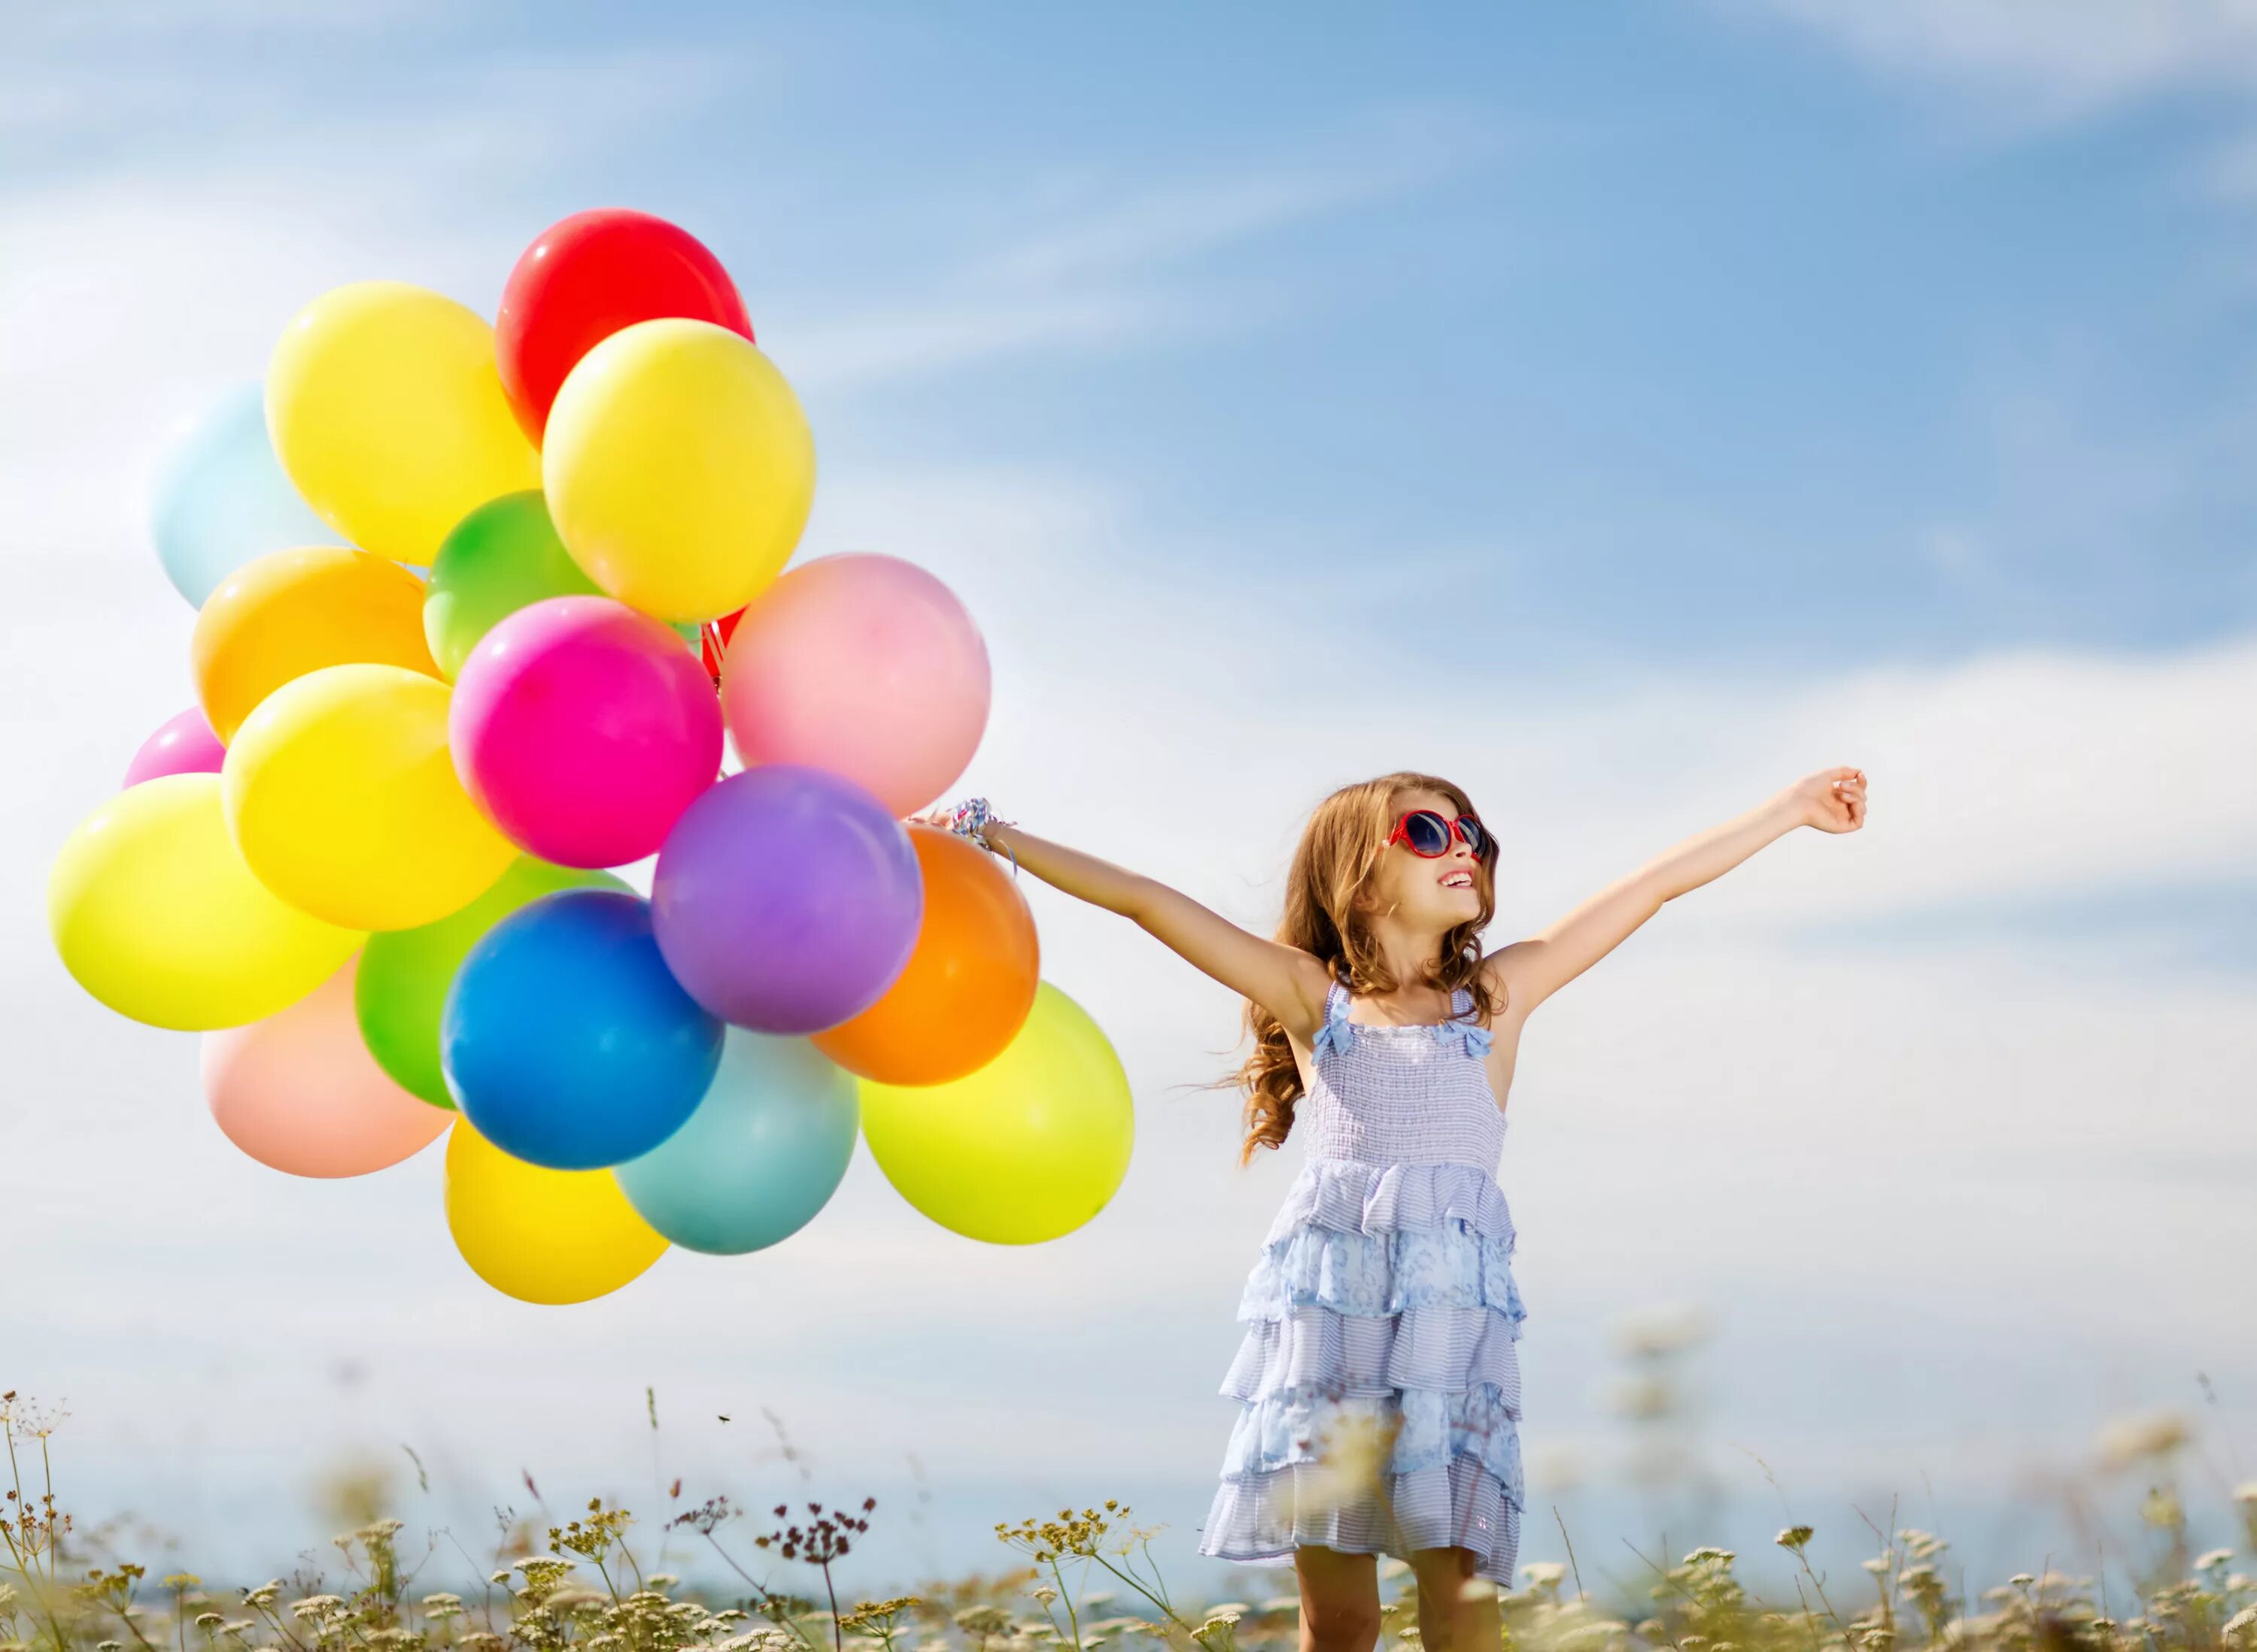 Позитивные картинки новые. Дети с воздушными шарами. Девочка с шариками. Красивые дети праздник яркий. Happy Summer дети.